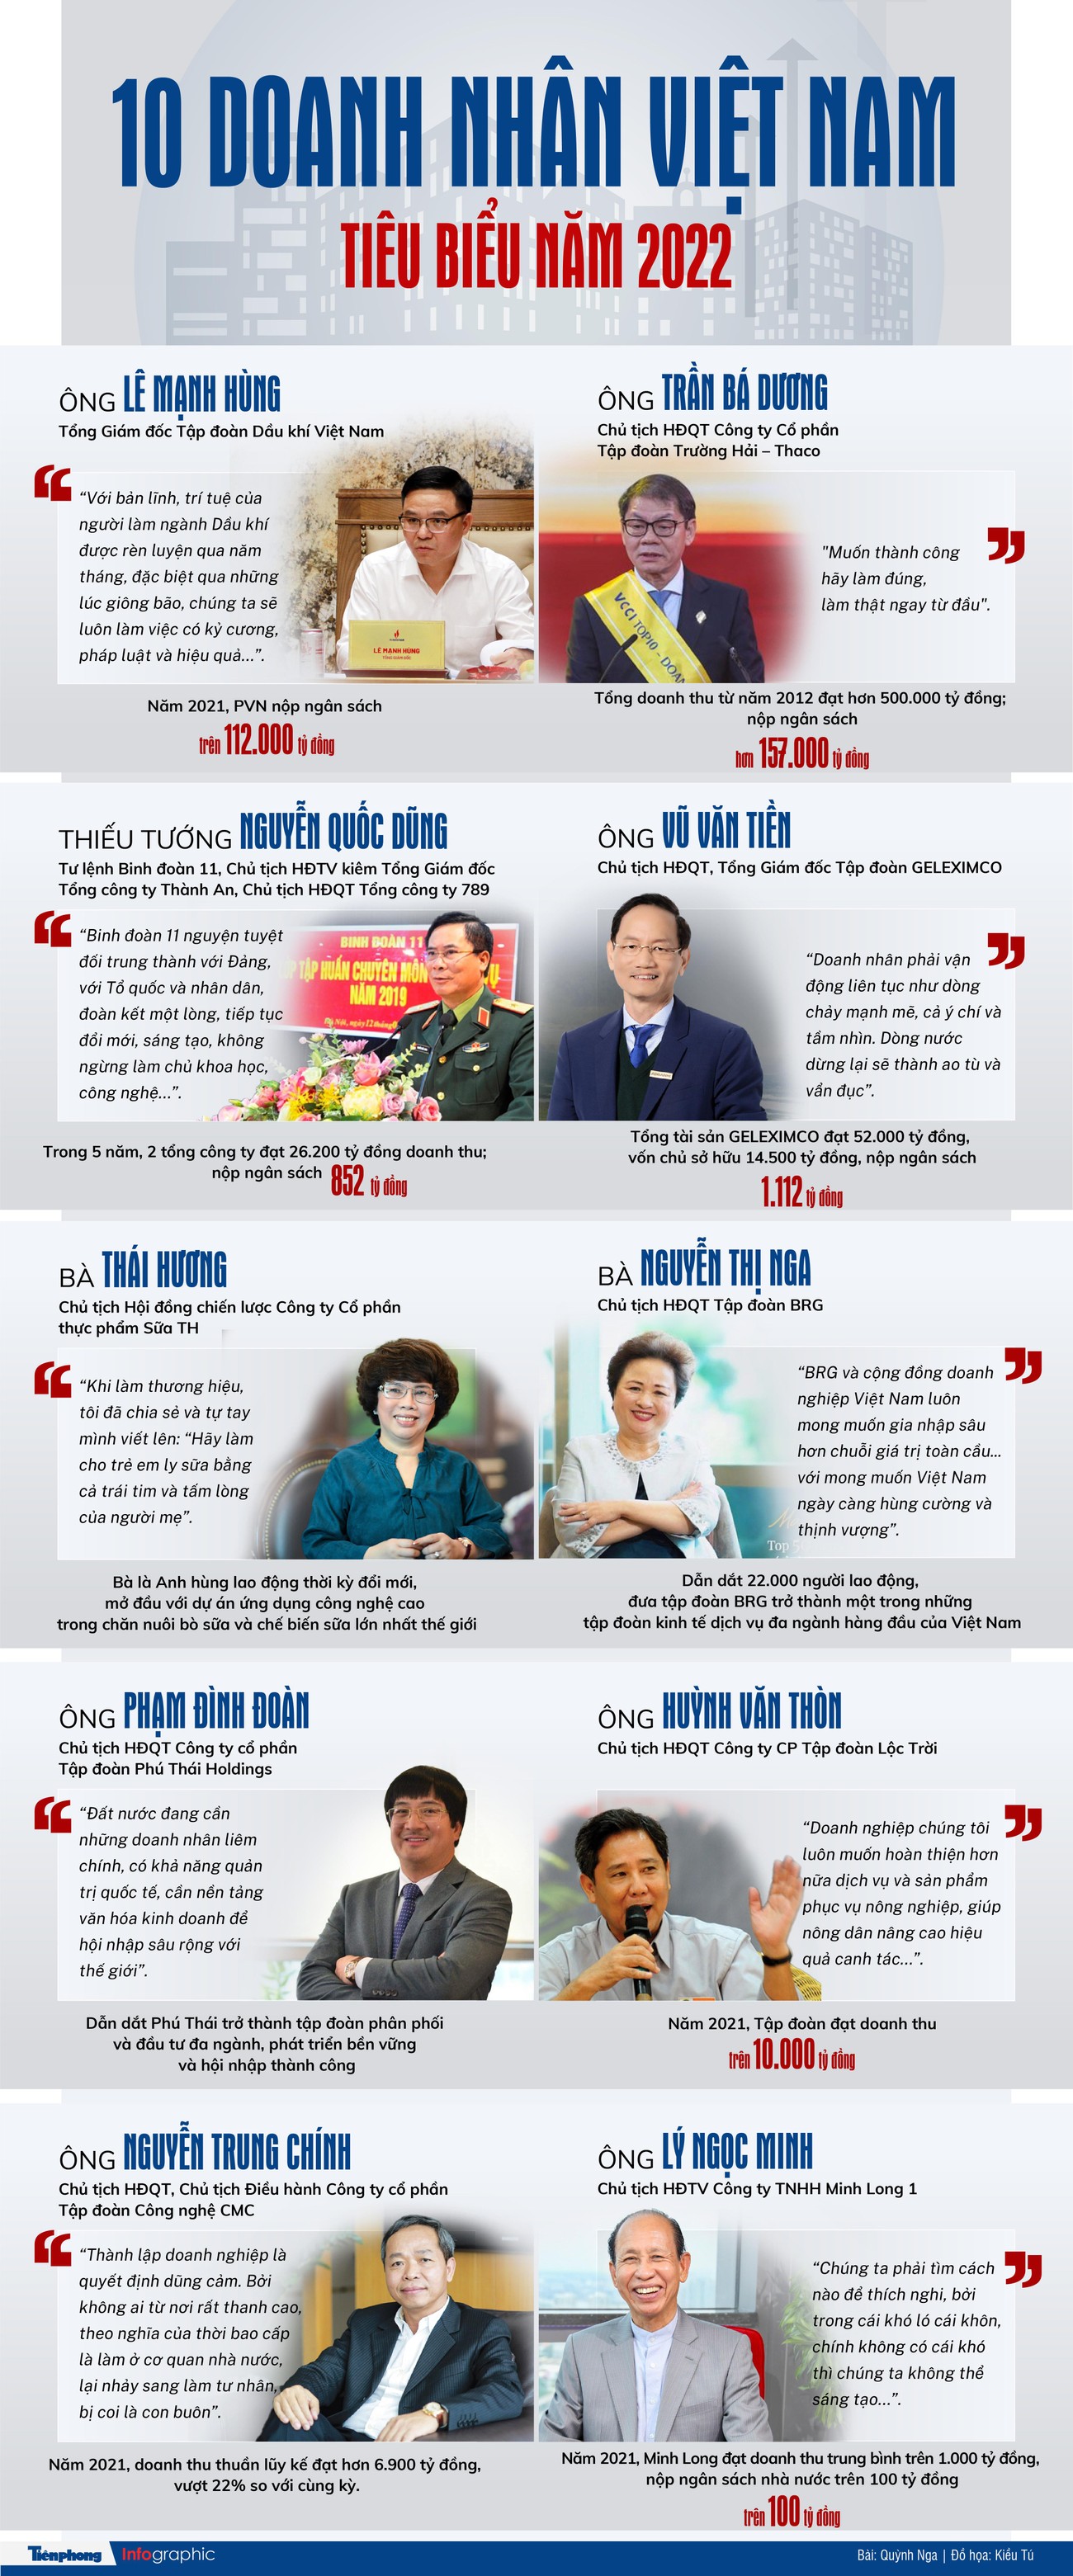 Chân dung 10 doanh nhân tiêu biểu nhất Việt Nam năm 2022 ảnh 1